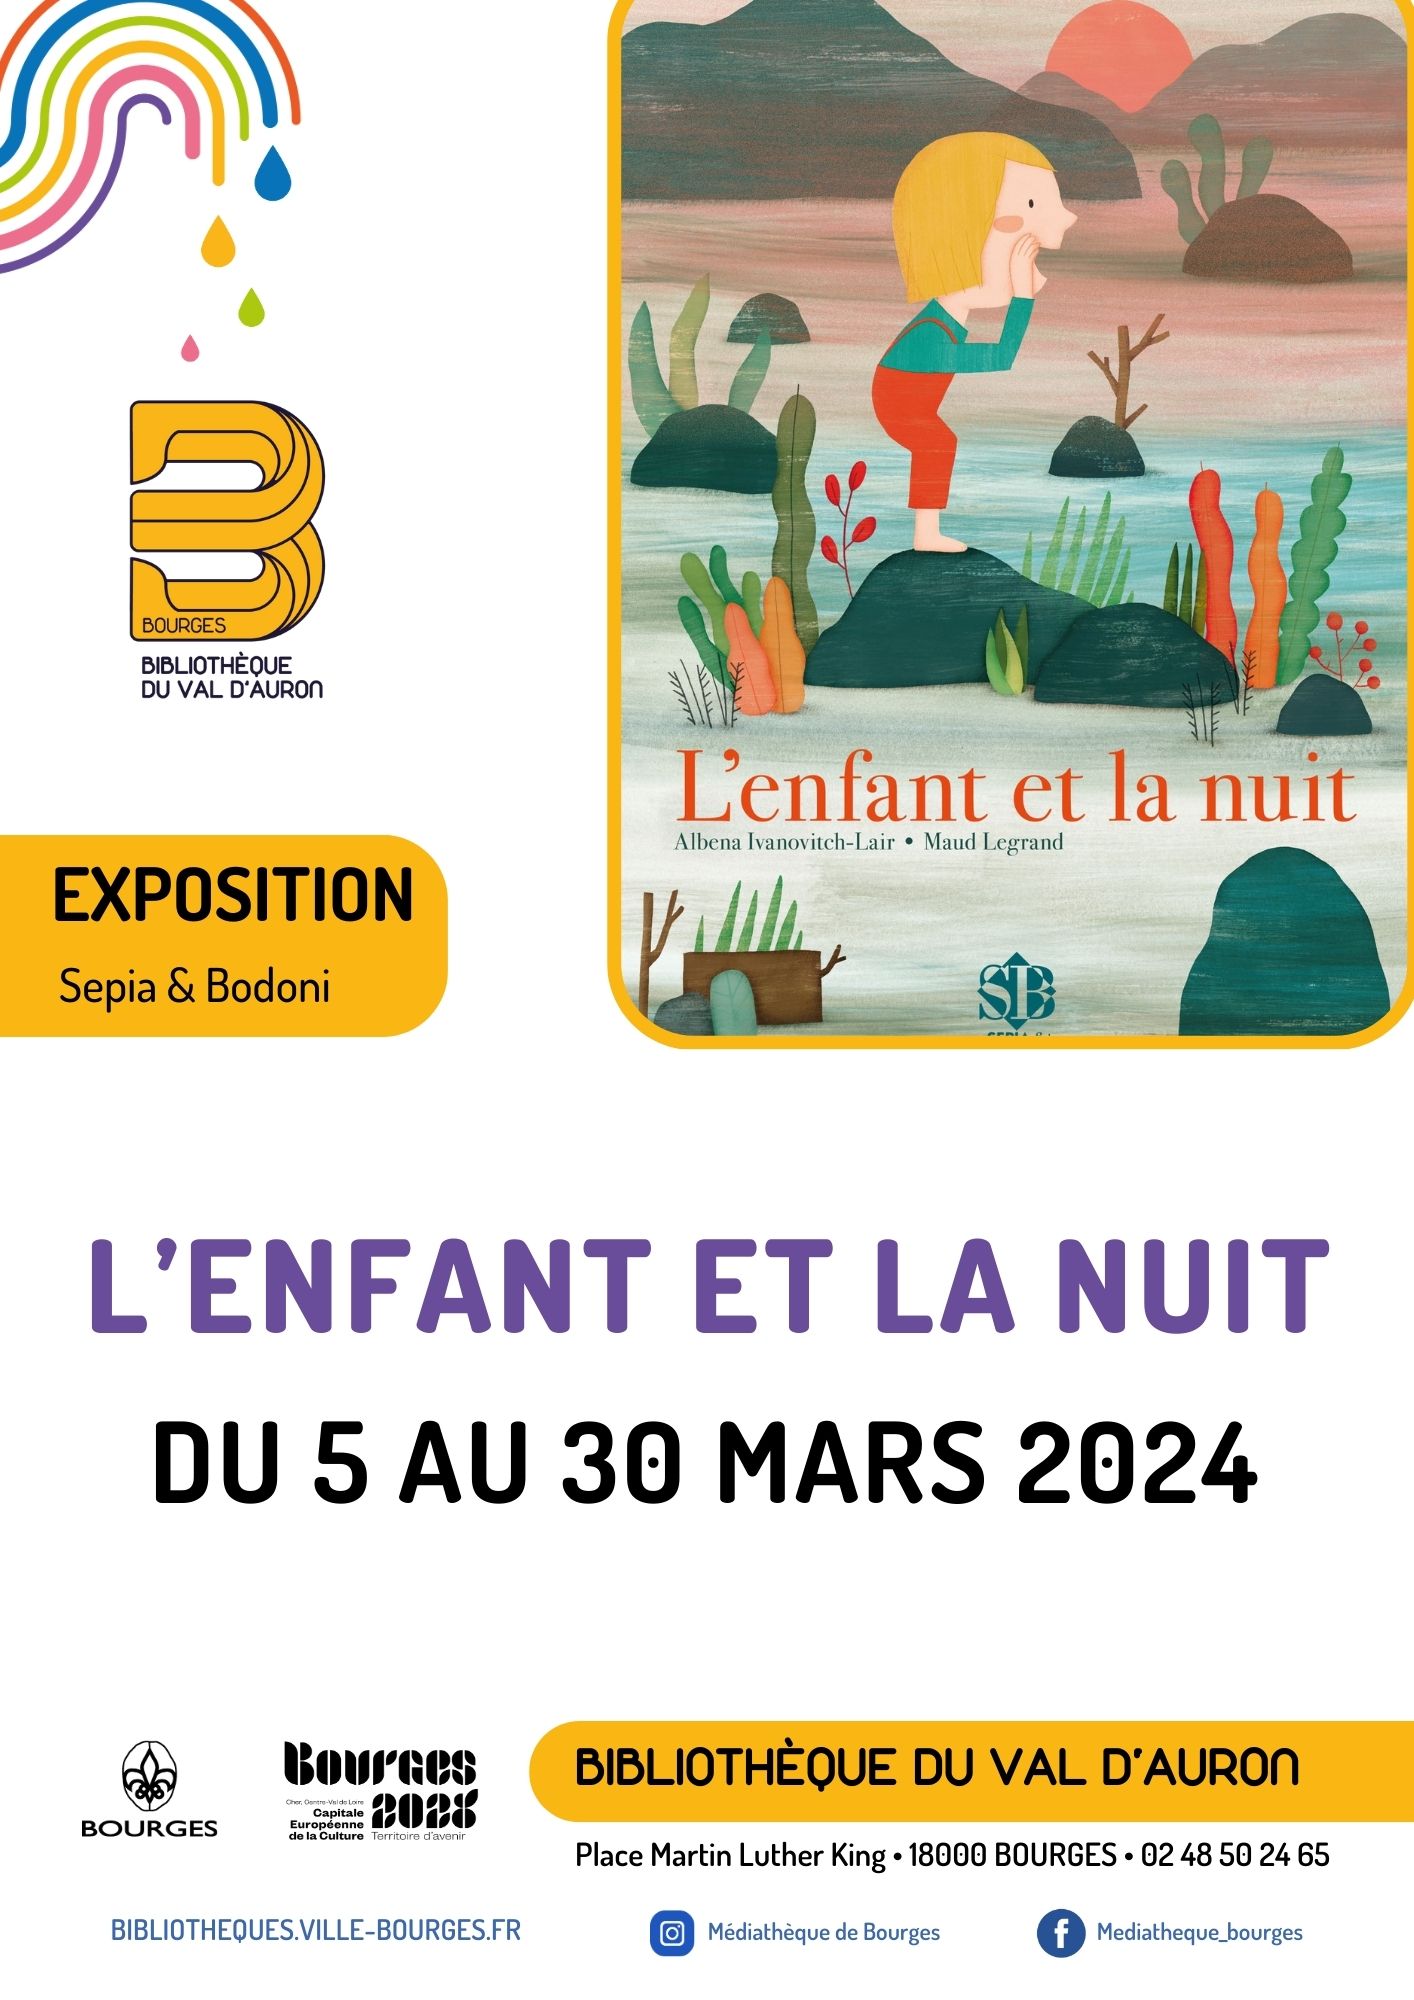 Programme de l'expo de la bibliothèque du Val d'Auron "L'enfant et la nuit"